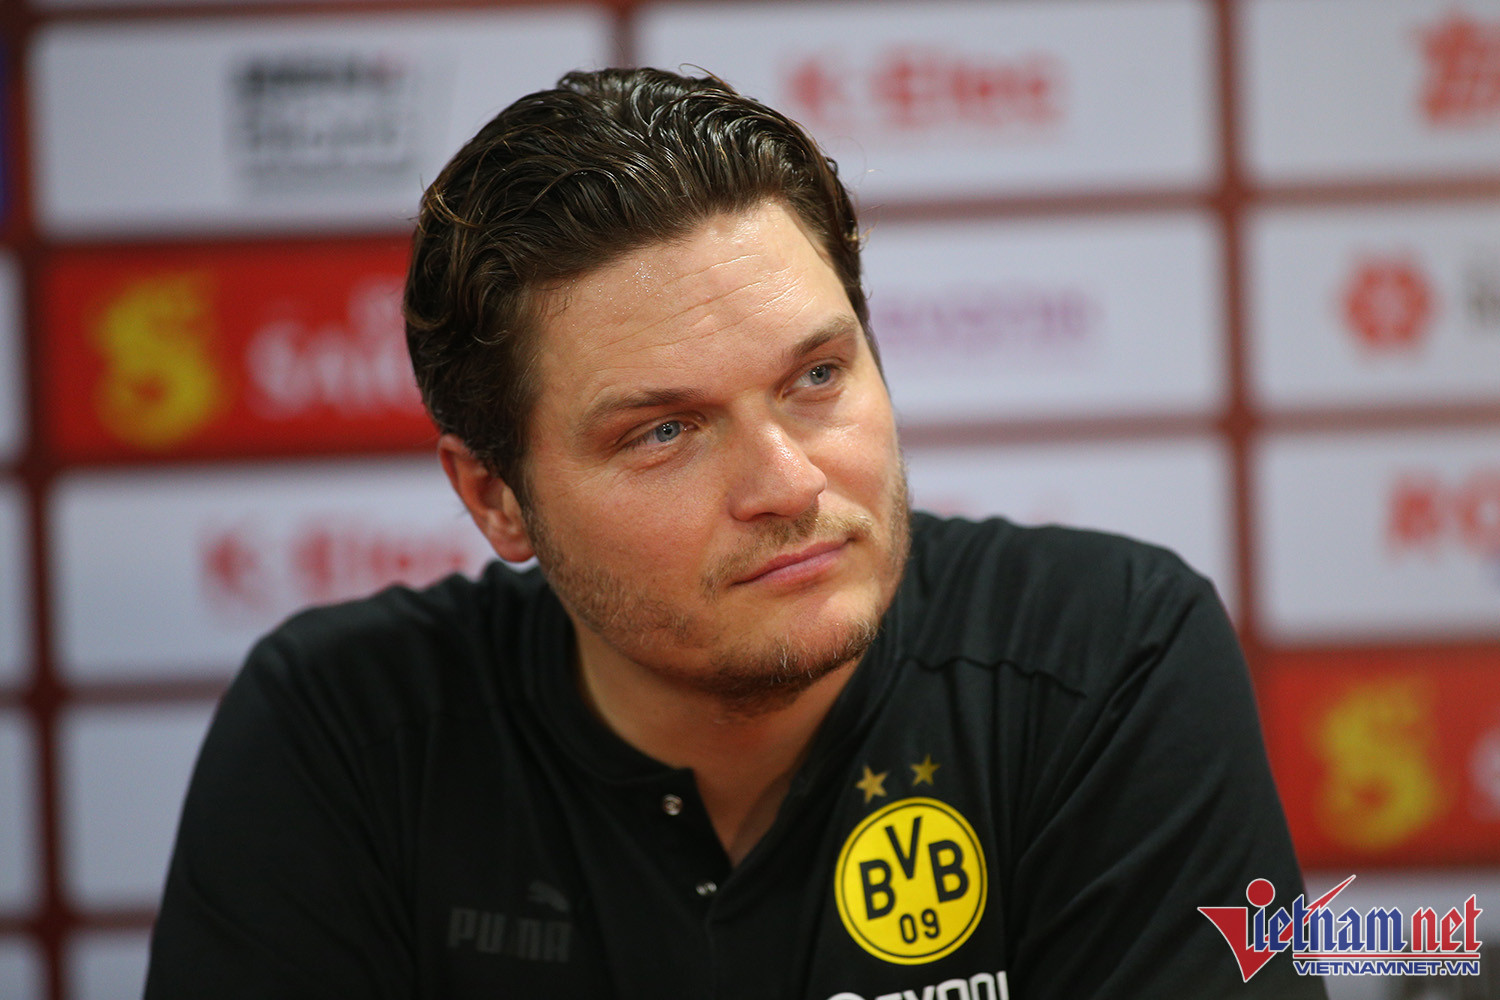 HLV Dortmund: Tôi ngạc nhiên vì thua tuyển Việt Nam